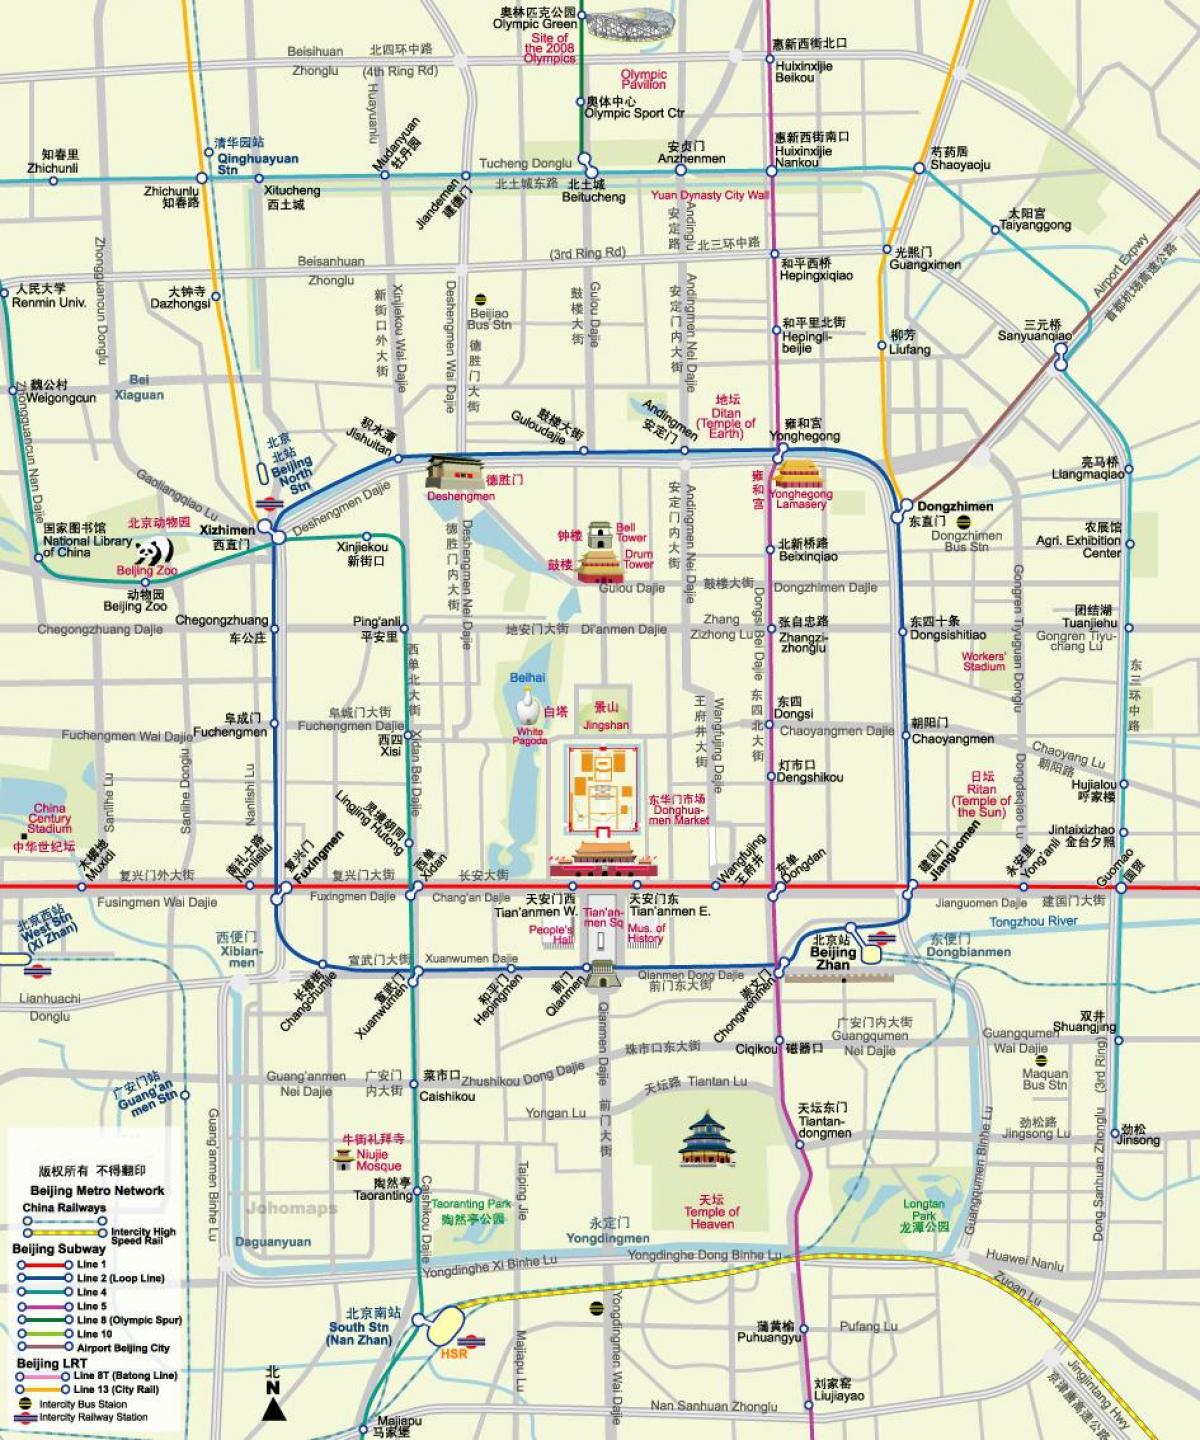 mapa do metrô de Pequim mapa com as atrações turísticas